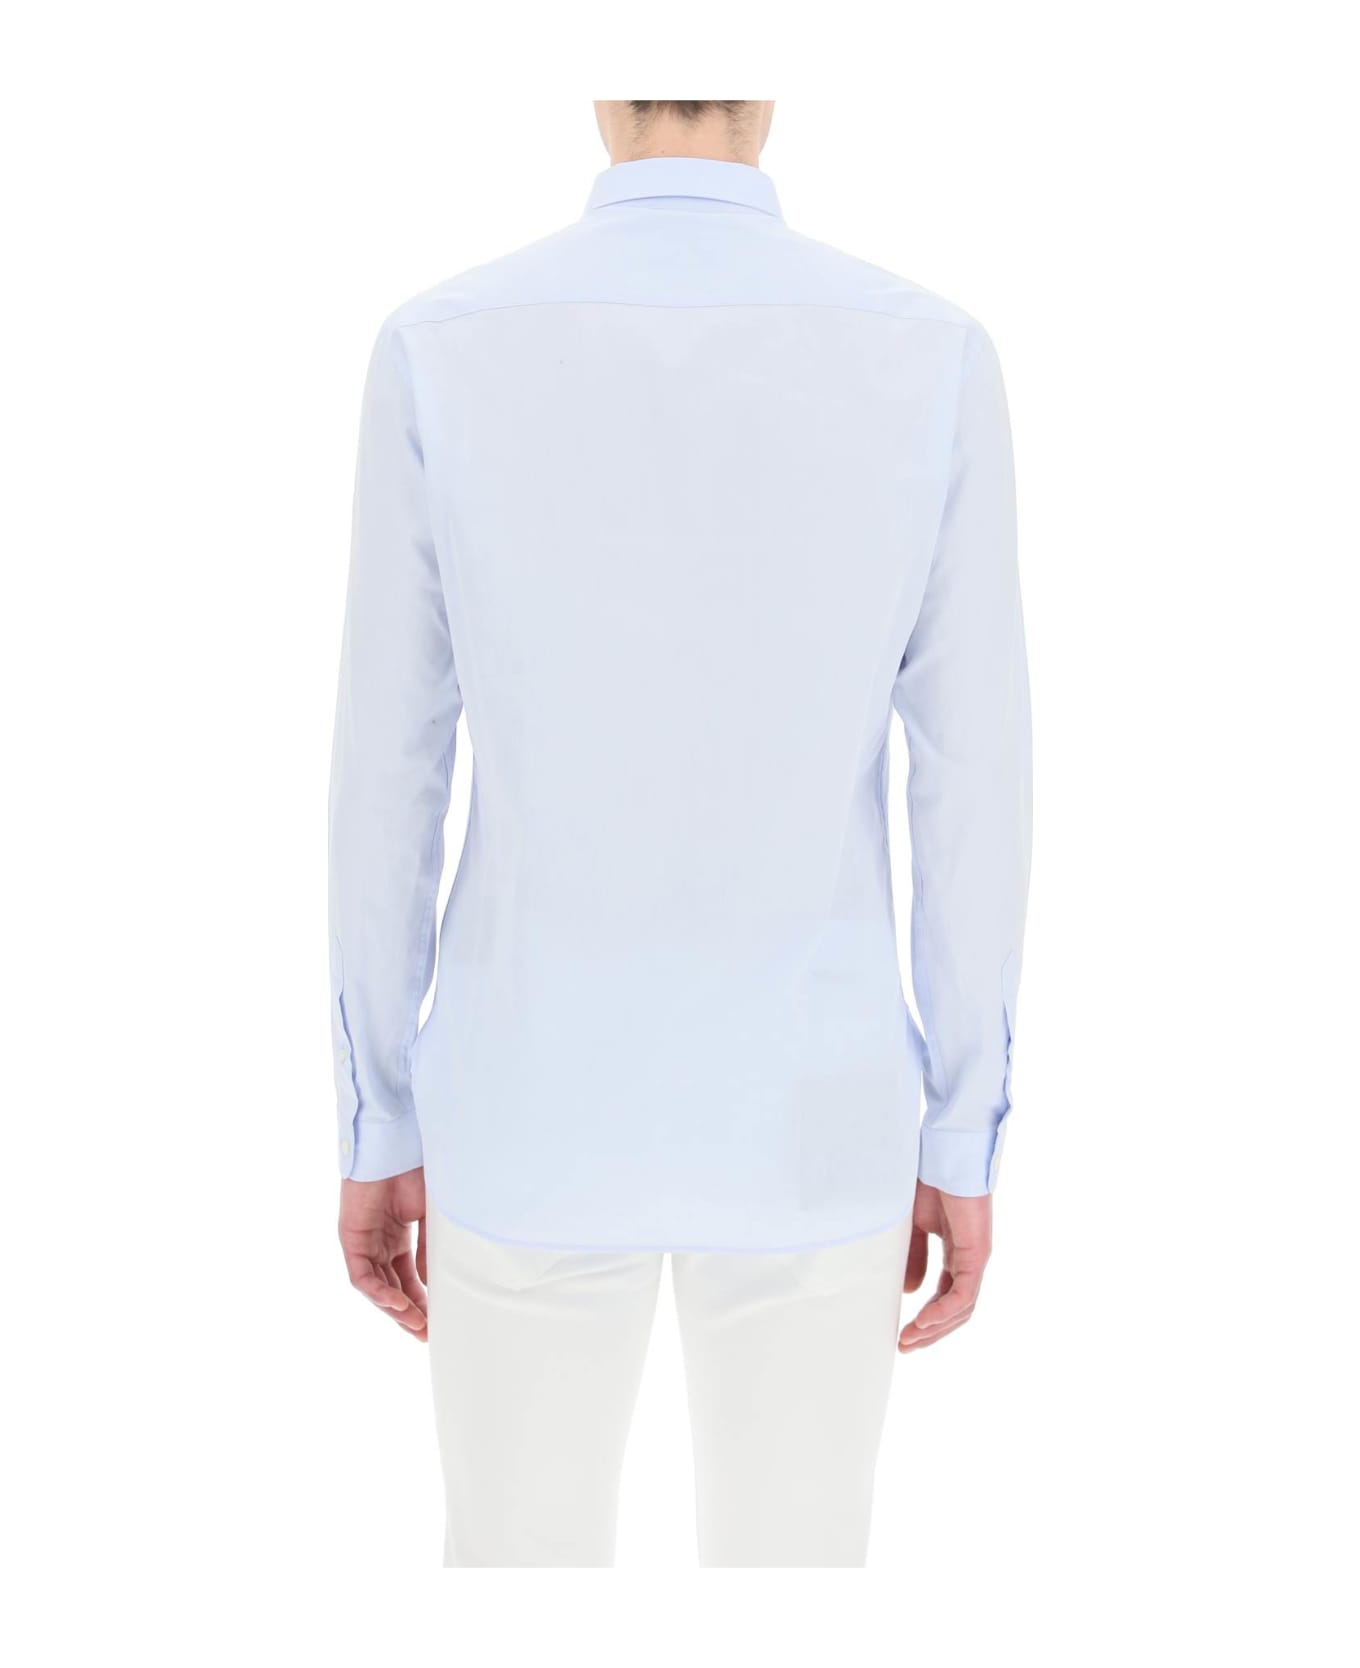 Maison Labiche Embroidered Malerbes Shirt - TWILL SKY BLUE (Light blue)